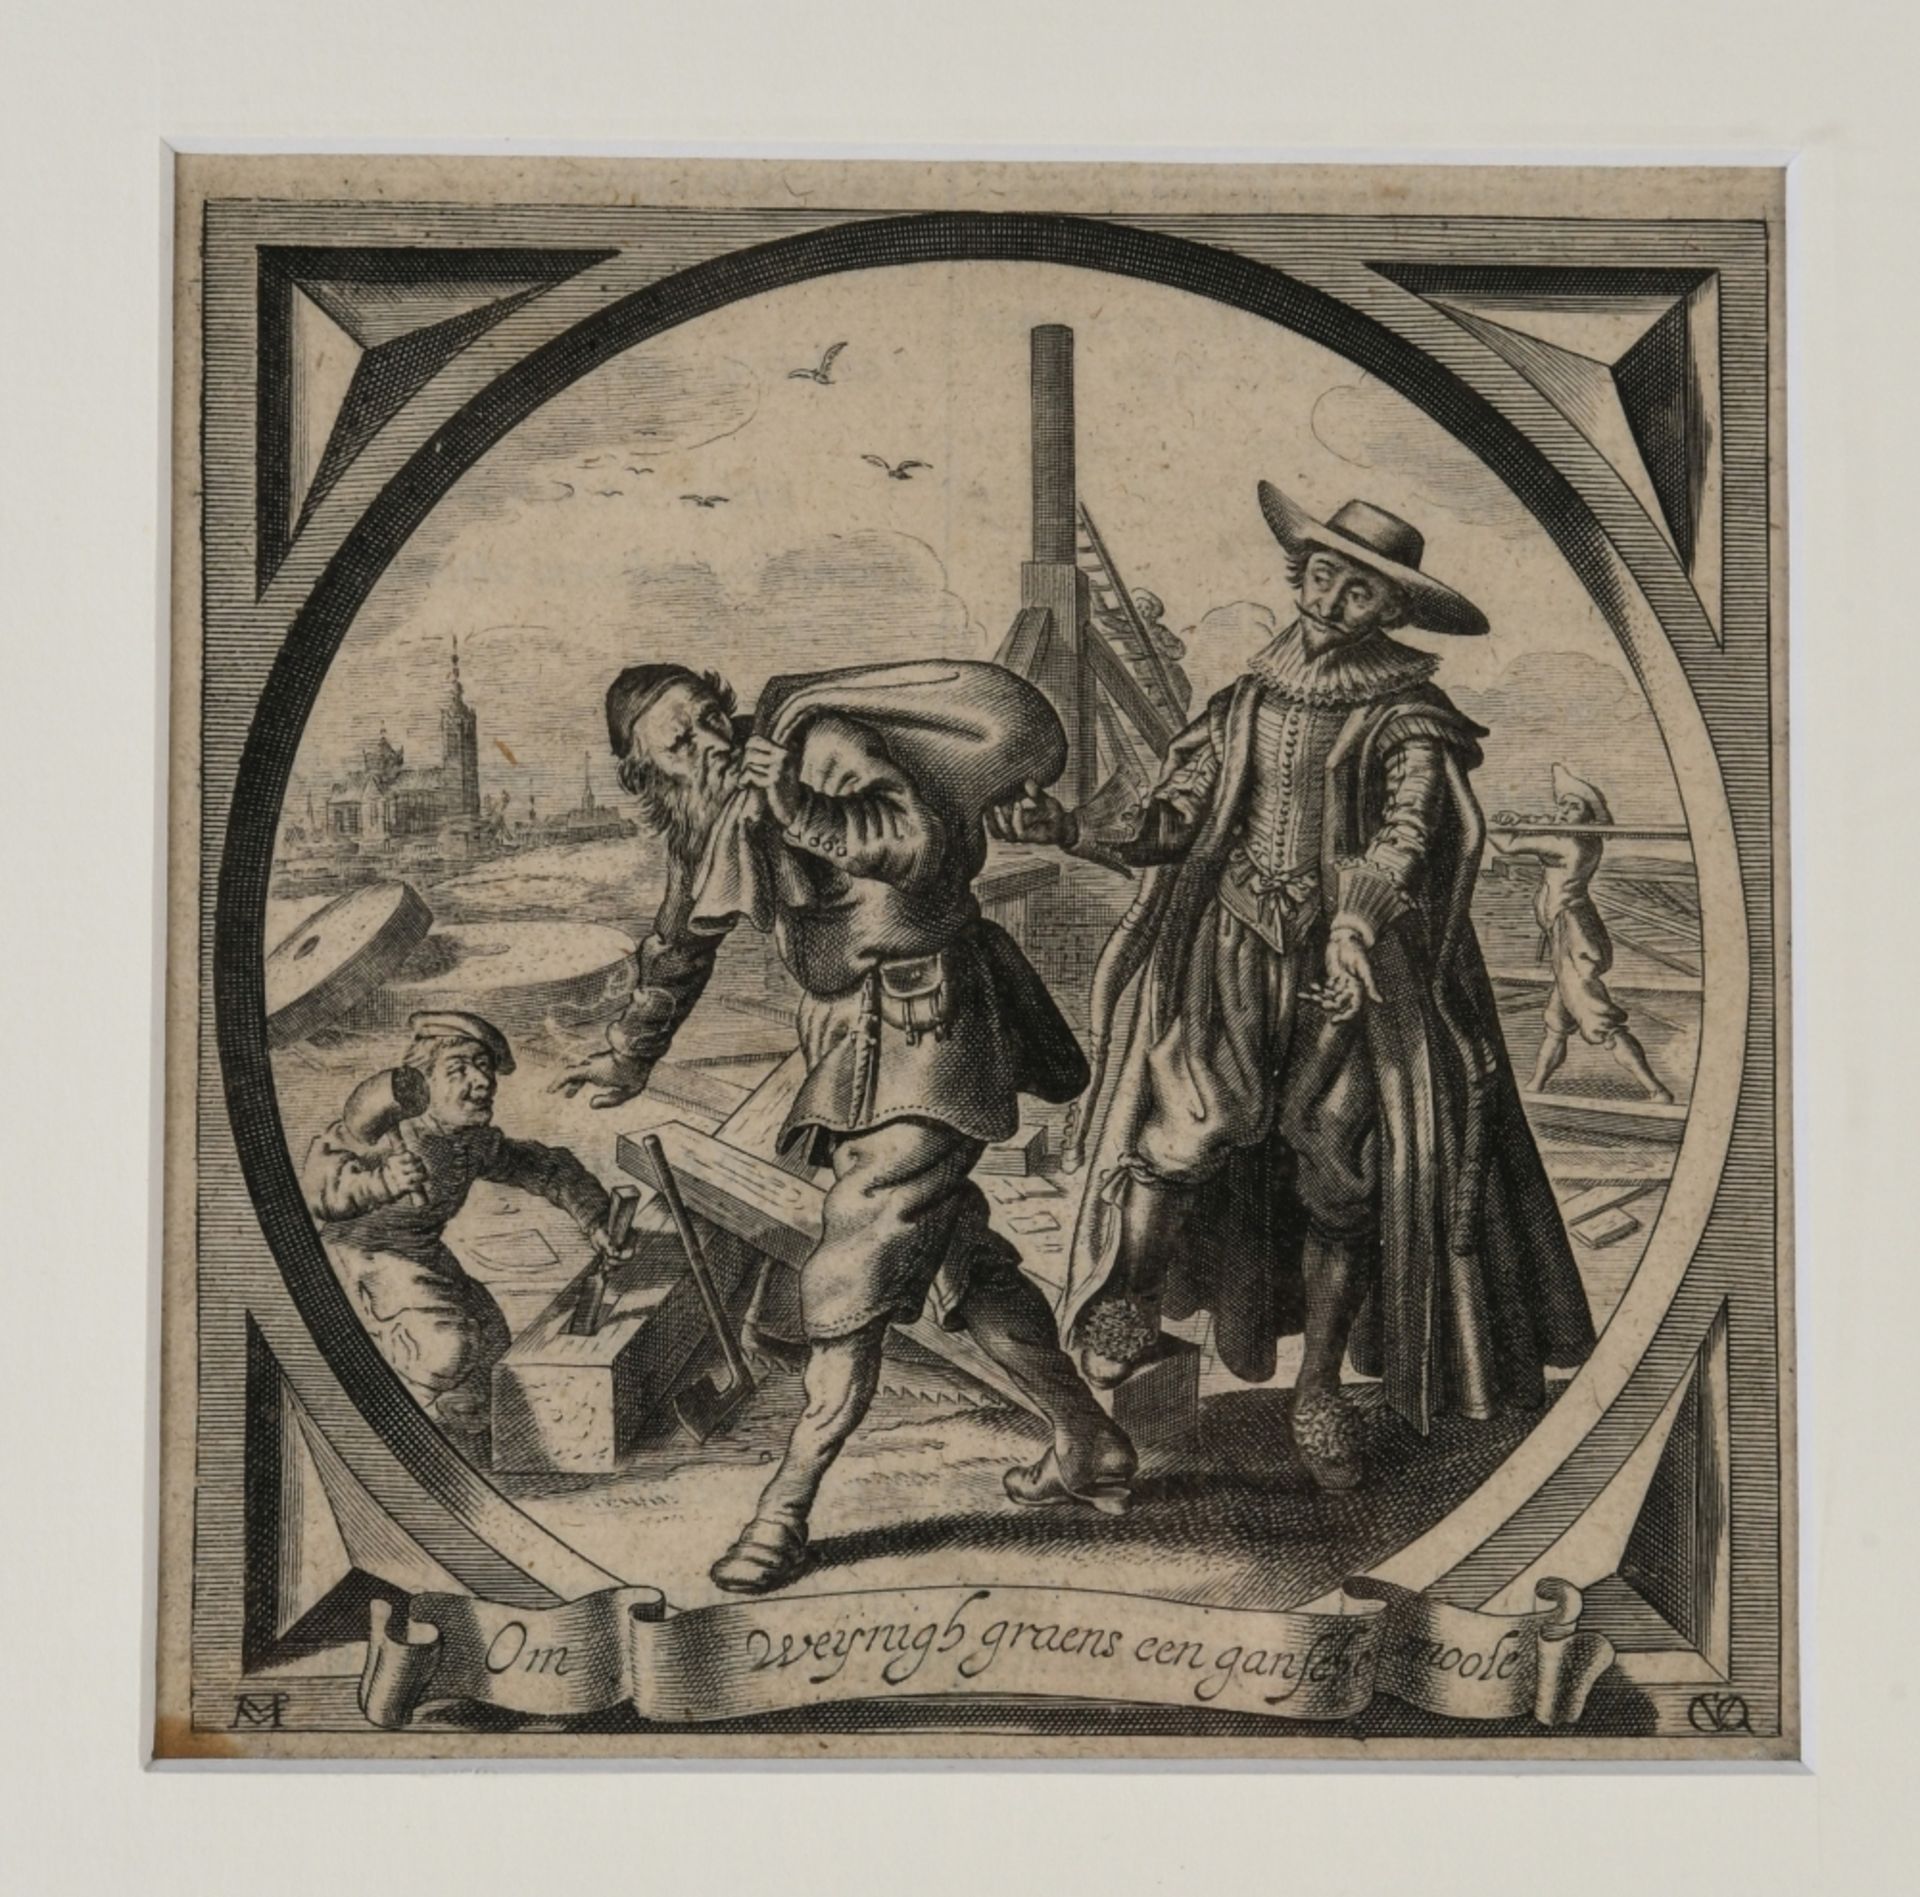 Queboorn, Crispyn van den, 1604 - 1652 Den Haag